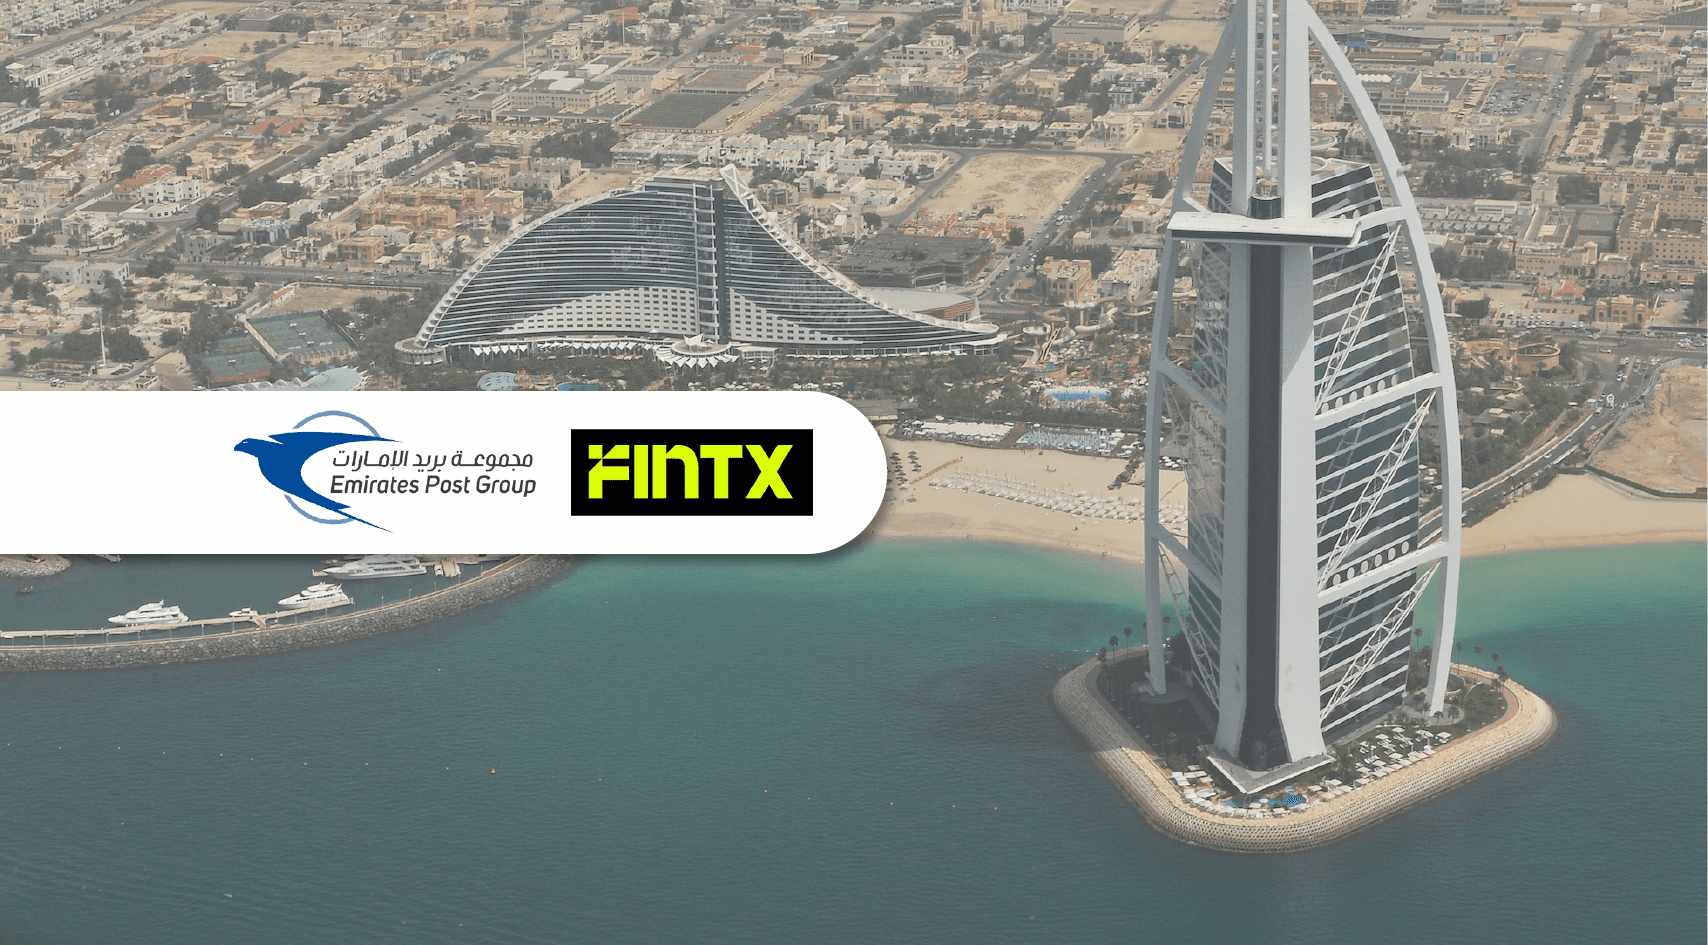 group,emirates,fintech,launch,fintx